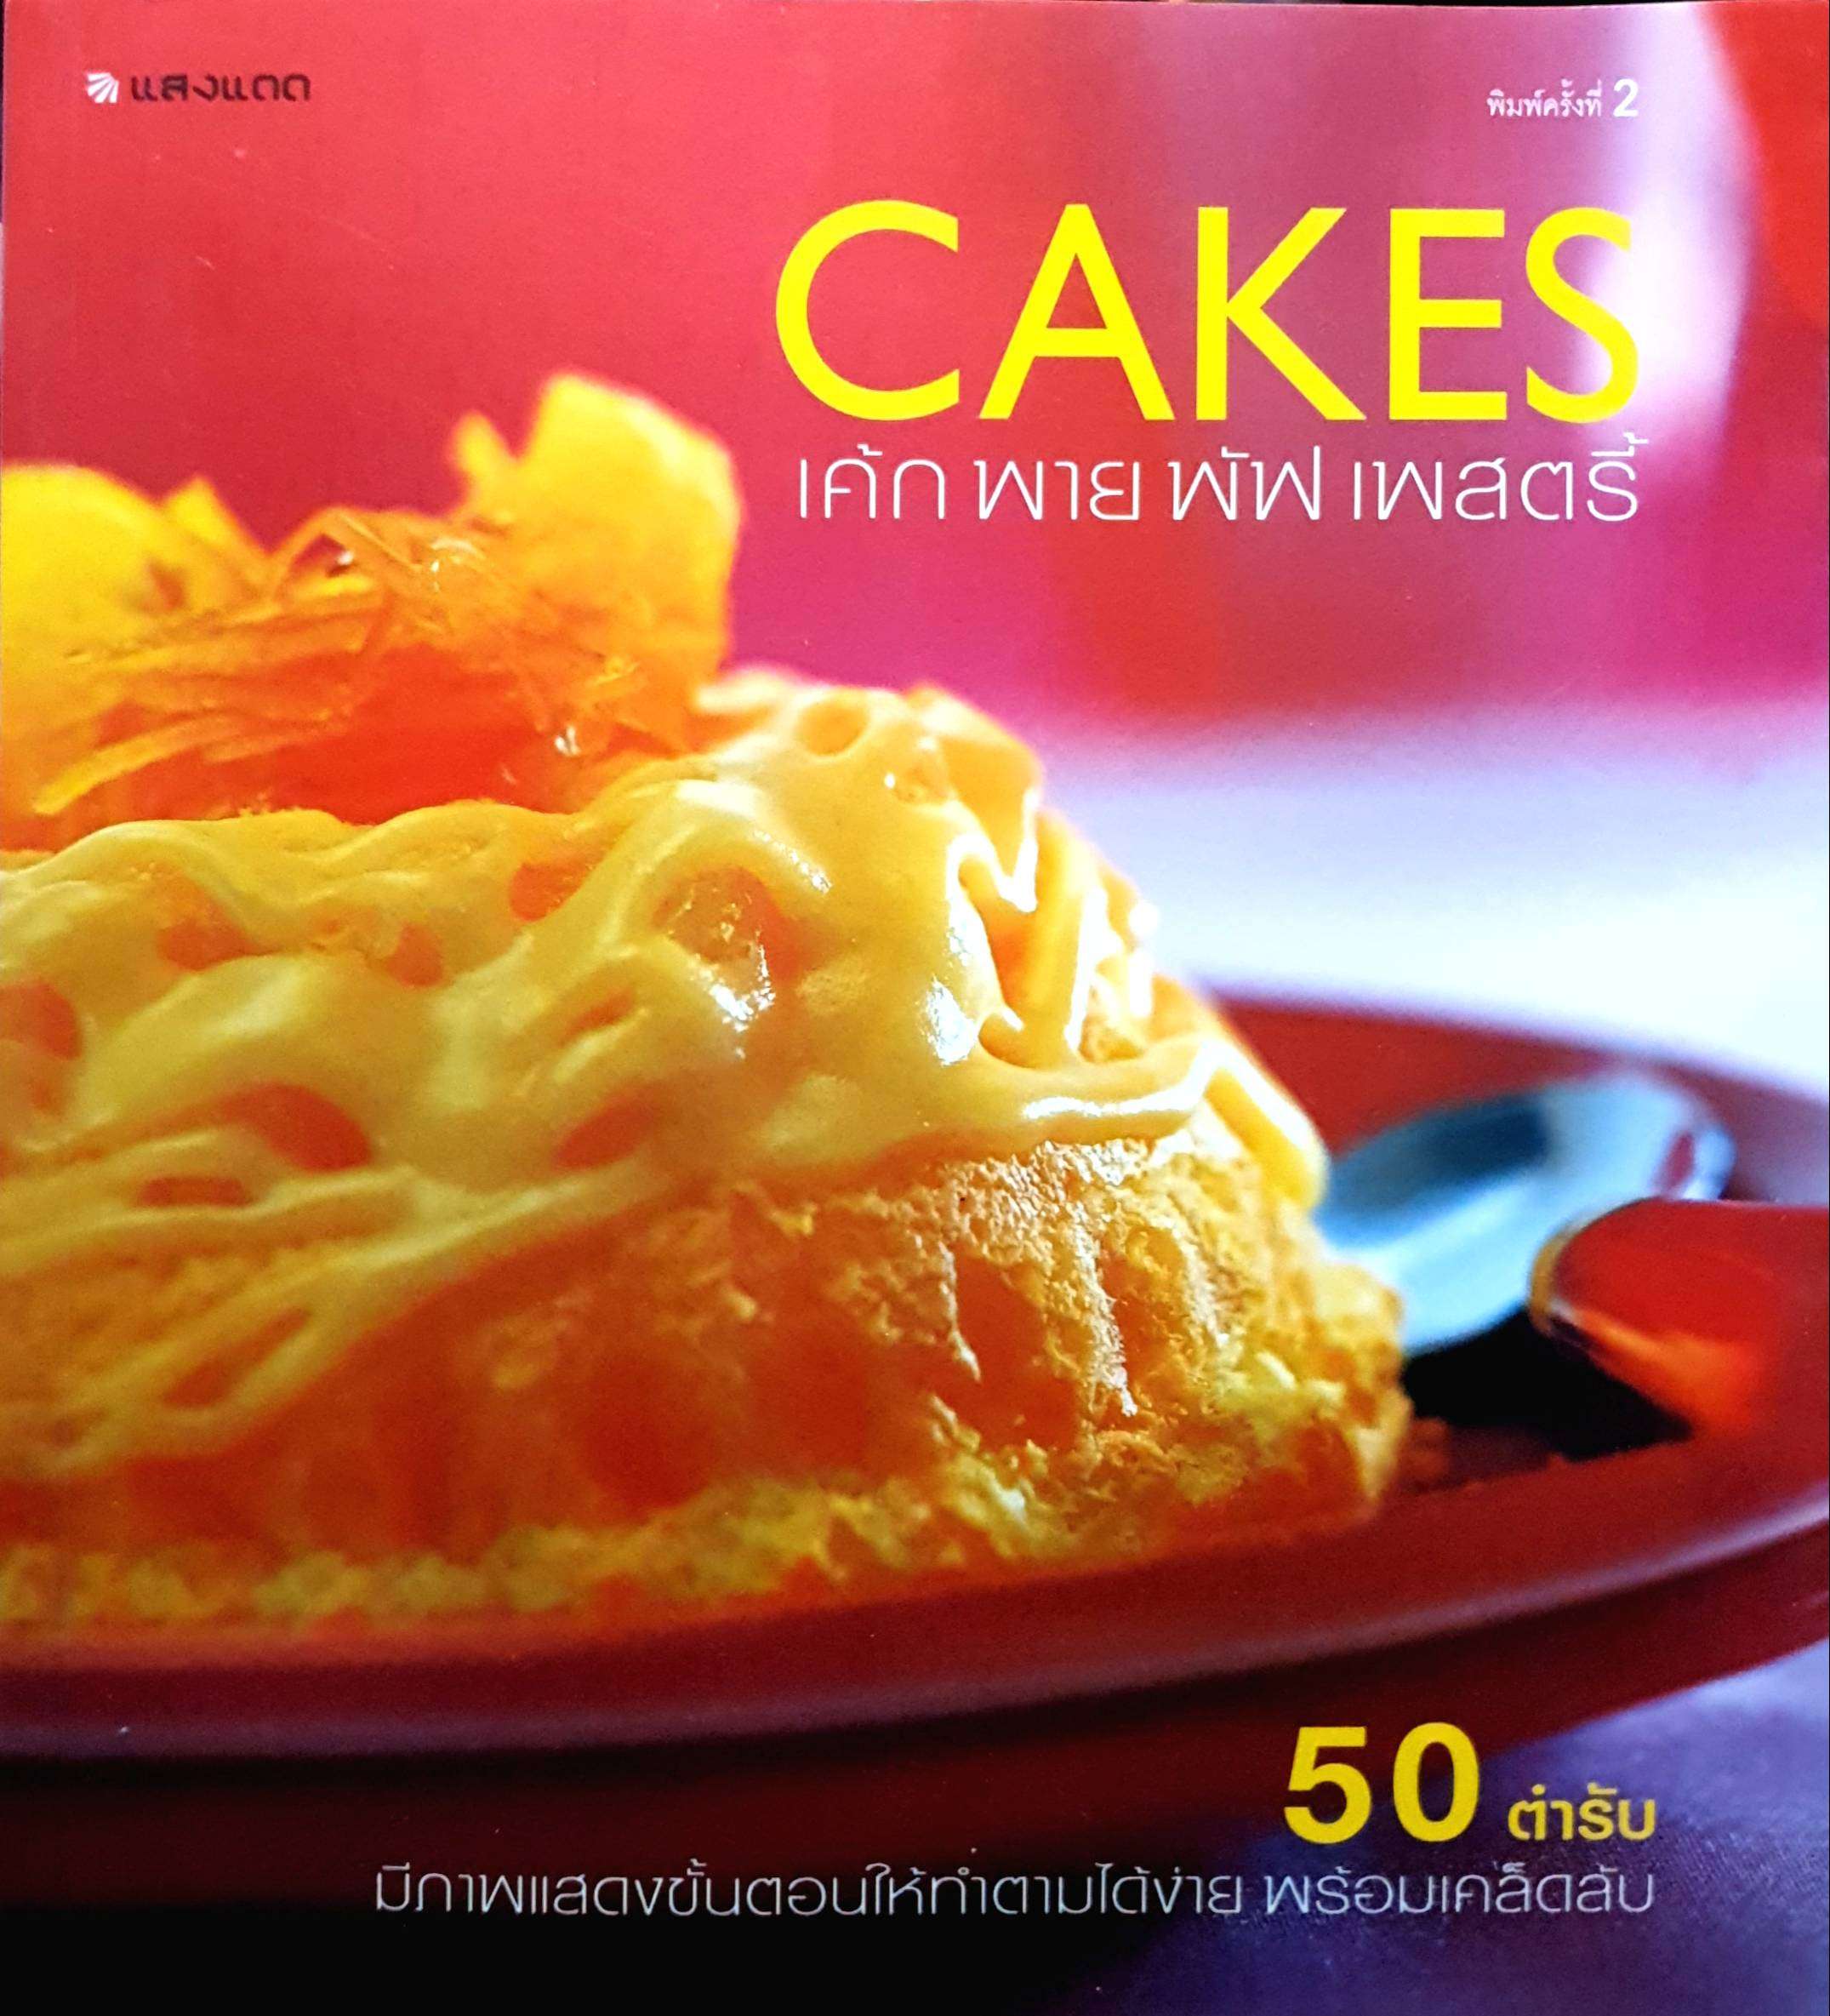 Cakes เค้ก พาย พัฟ เพสตรี้ : 50 ตำรับ มีภาพแสดงขั้นตอนให้ทำตามได้ง่าย พร้อมเคล็ดลับ